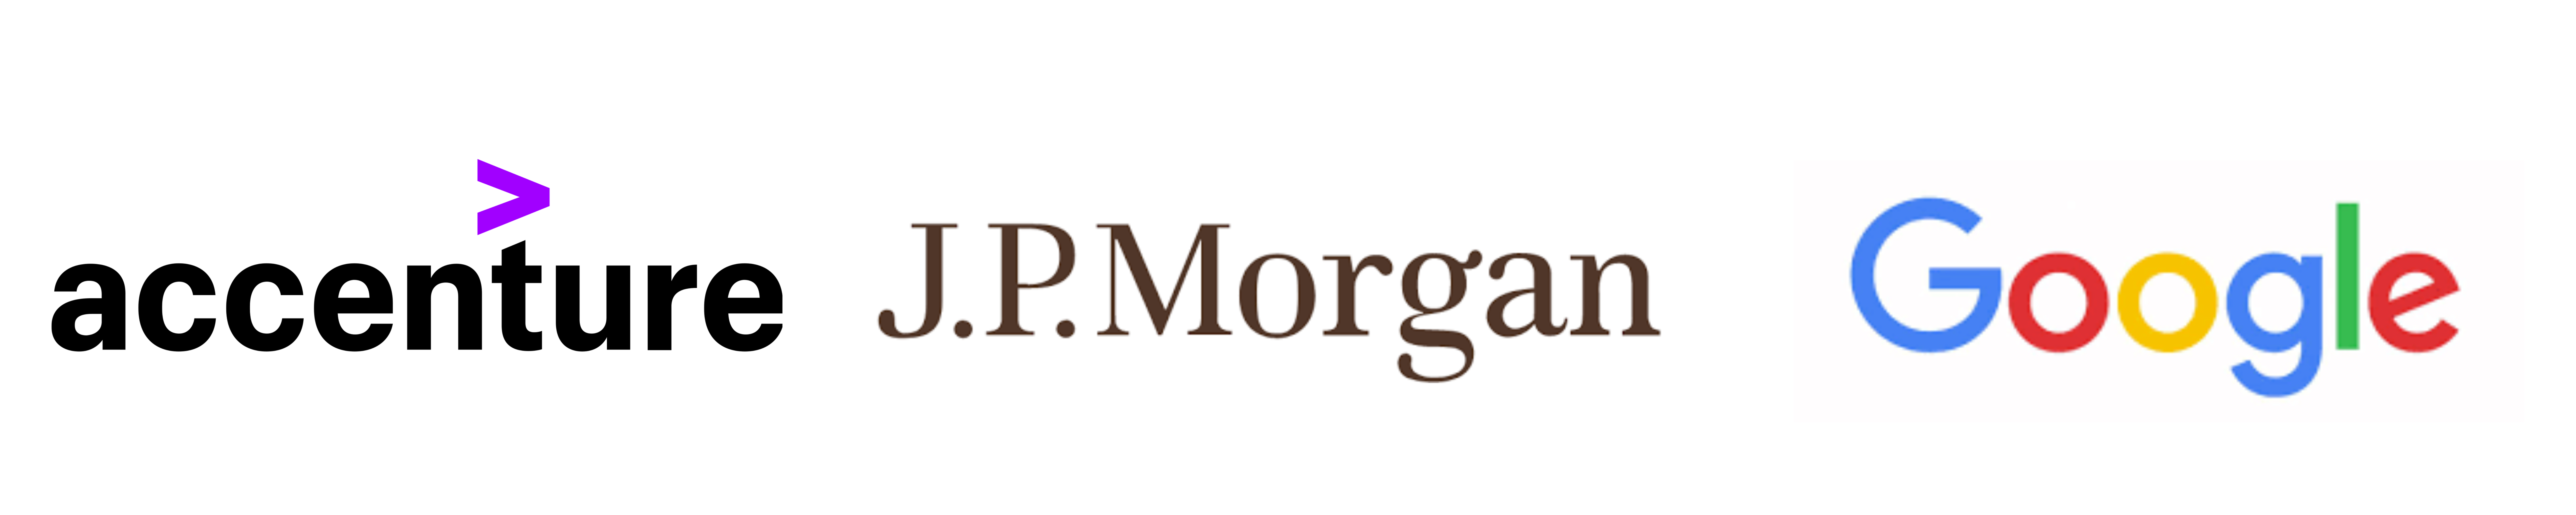 Accenture logo, JP Morgan logo, and Google logo